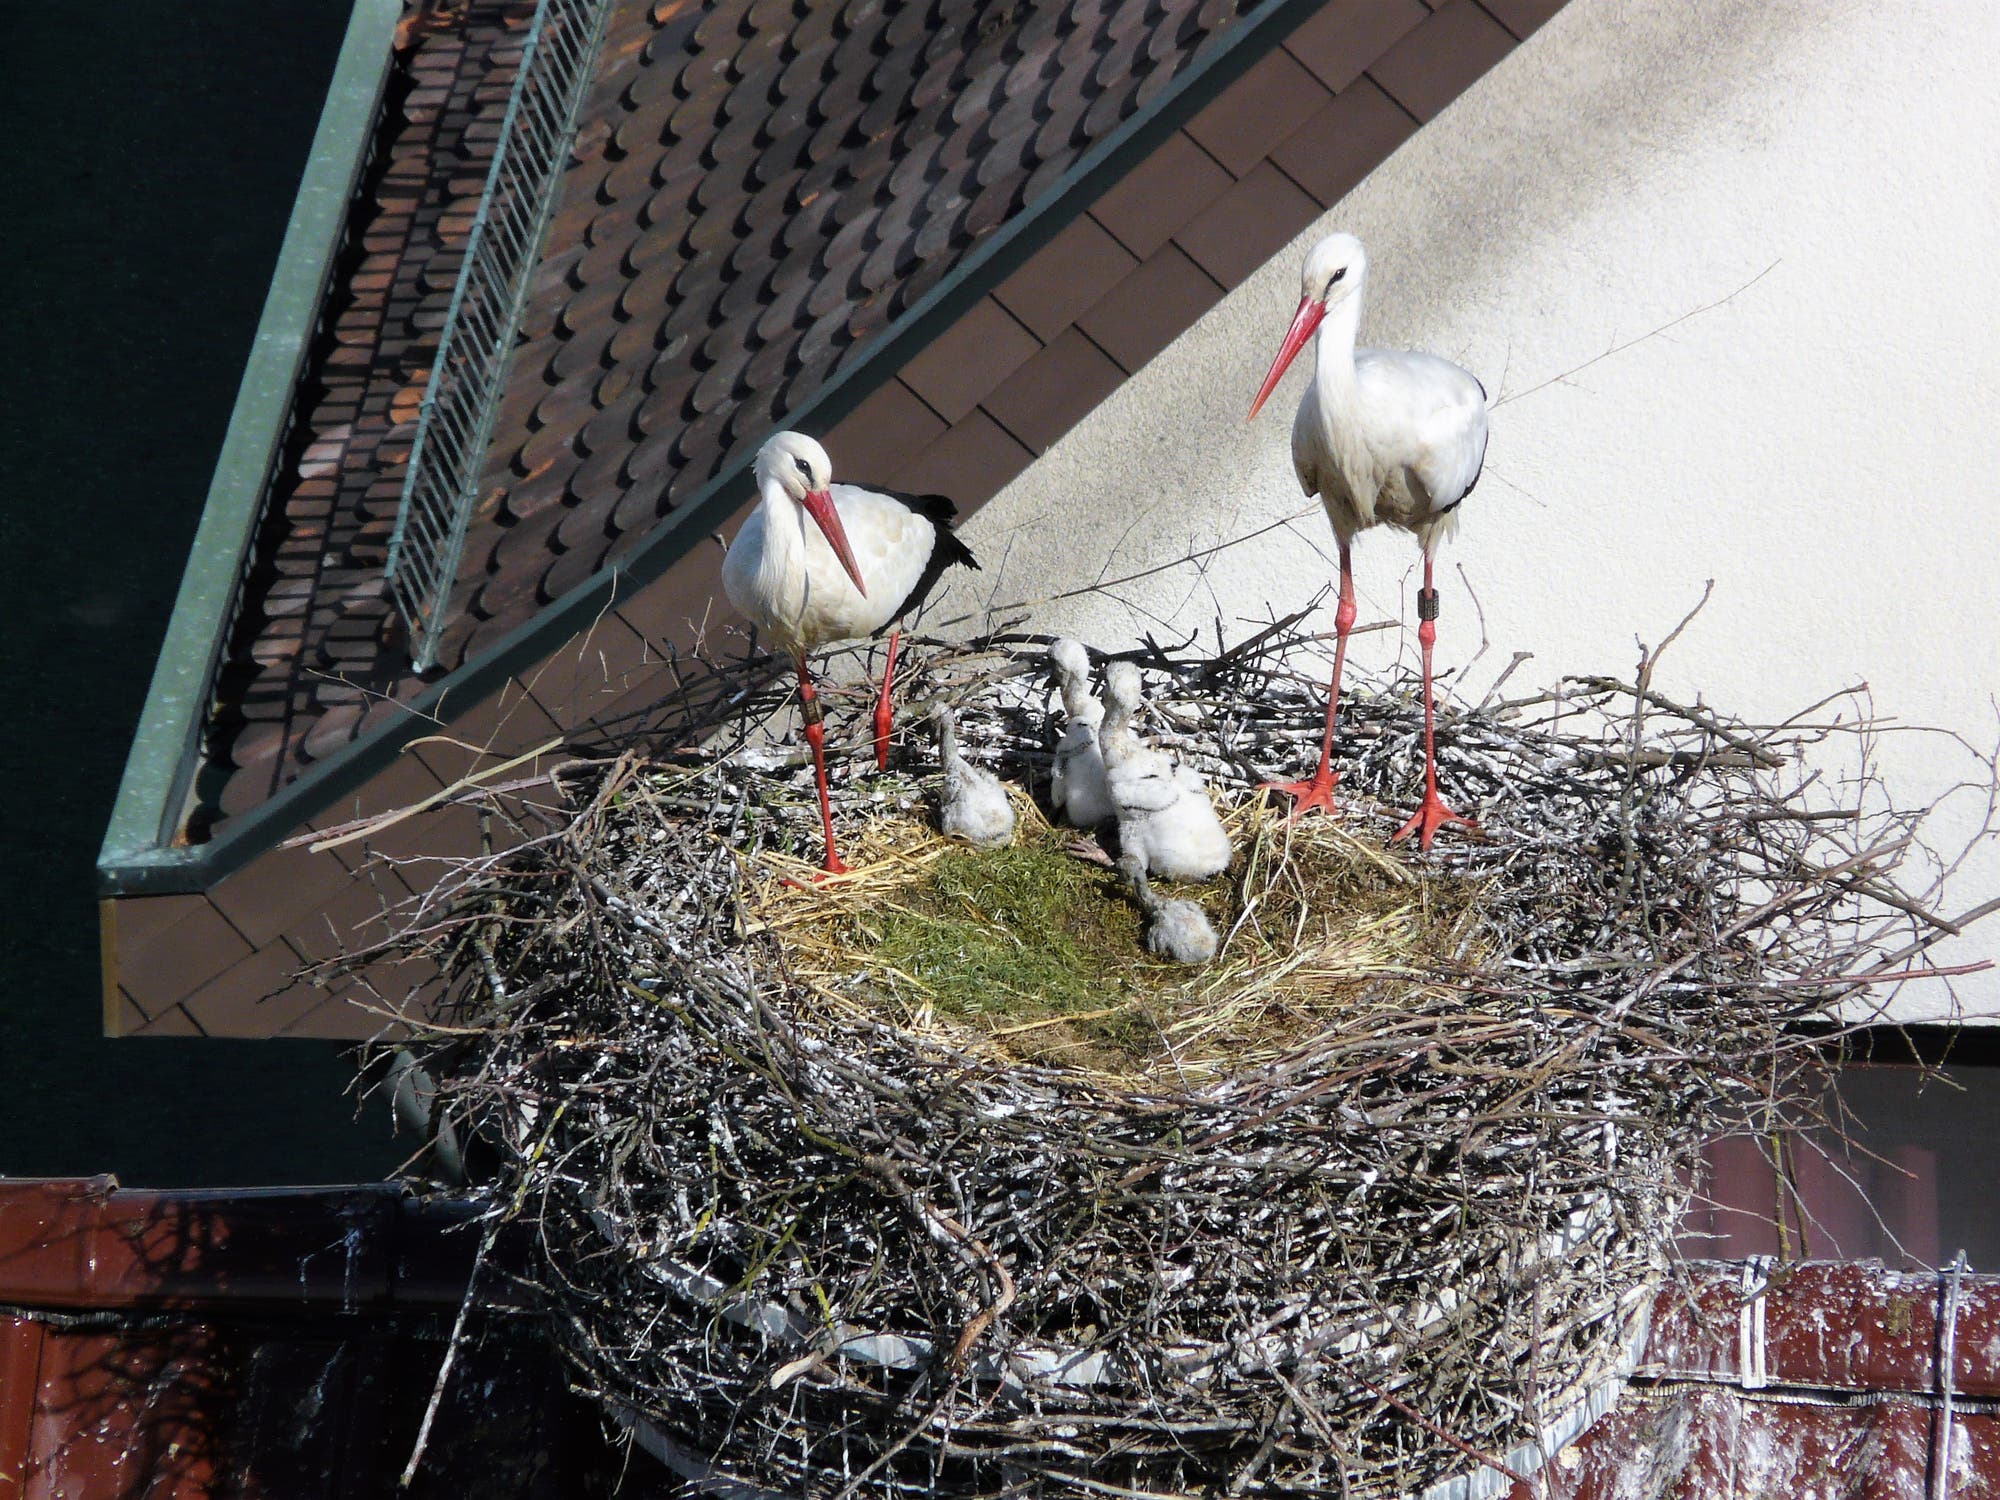 Storchenpaar mit vier Jungvögeln in einem Nest nahe einem Haus.